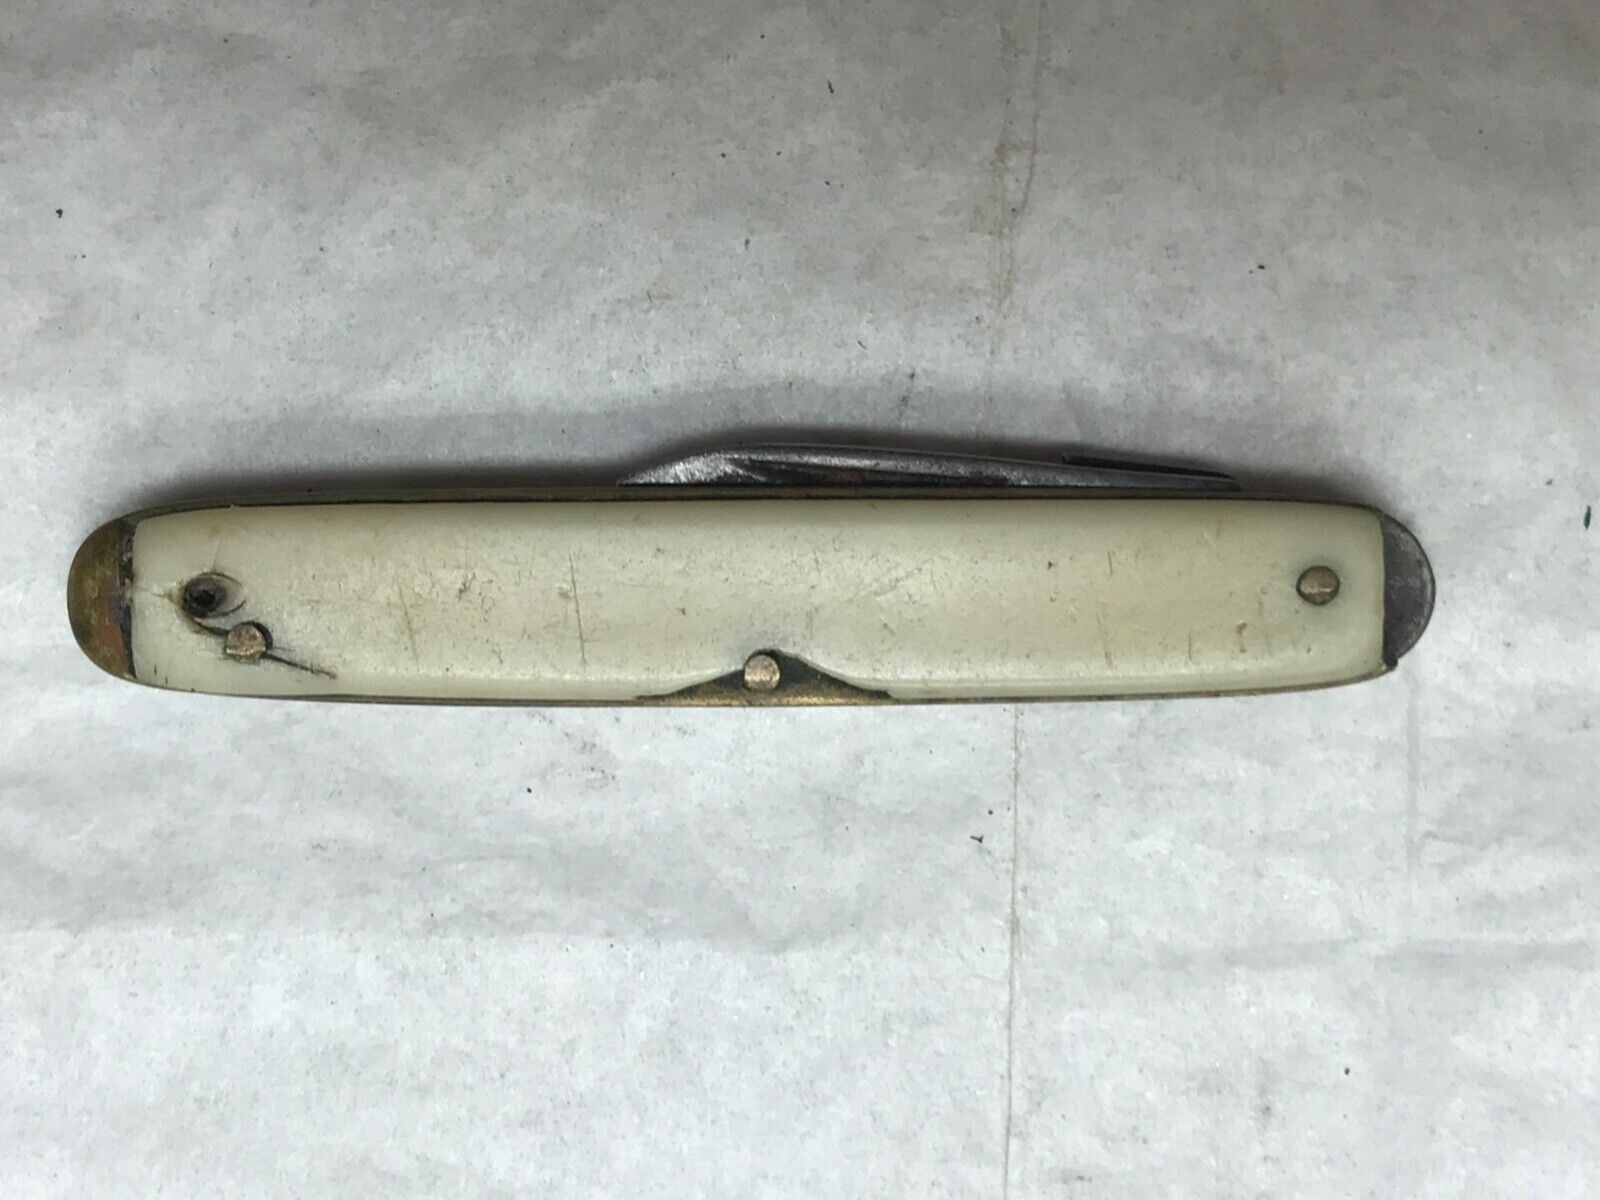 Small 2 blade Pocket Knife - One Blade Broken